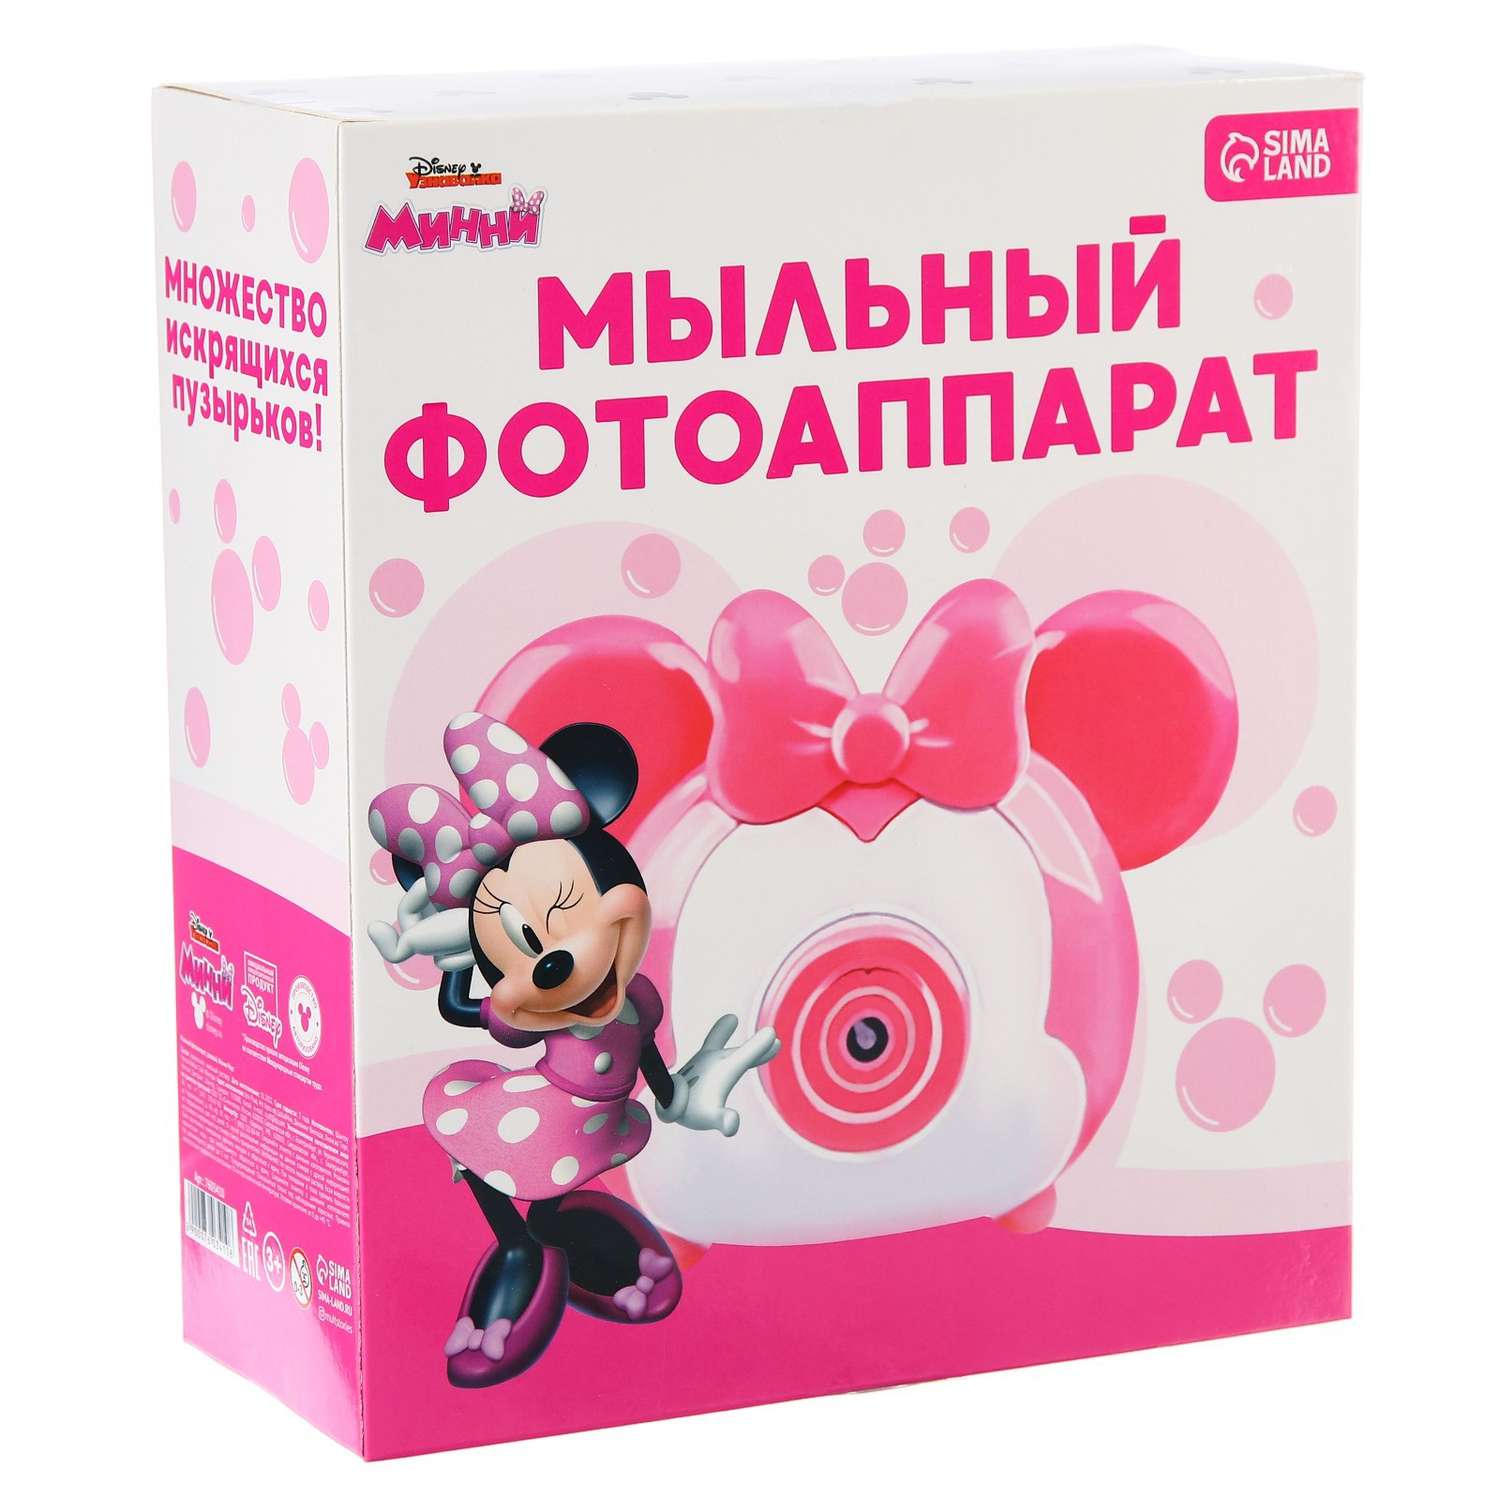 Мыльный фотоаппарат Disney Микки Маус розовый - фото 1